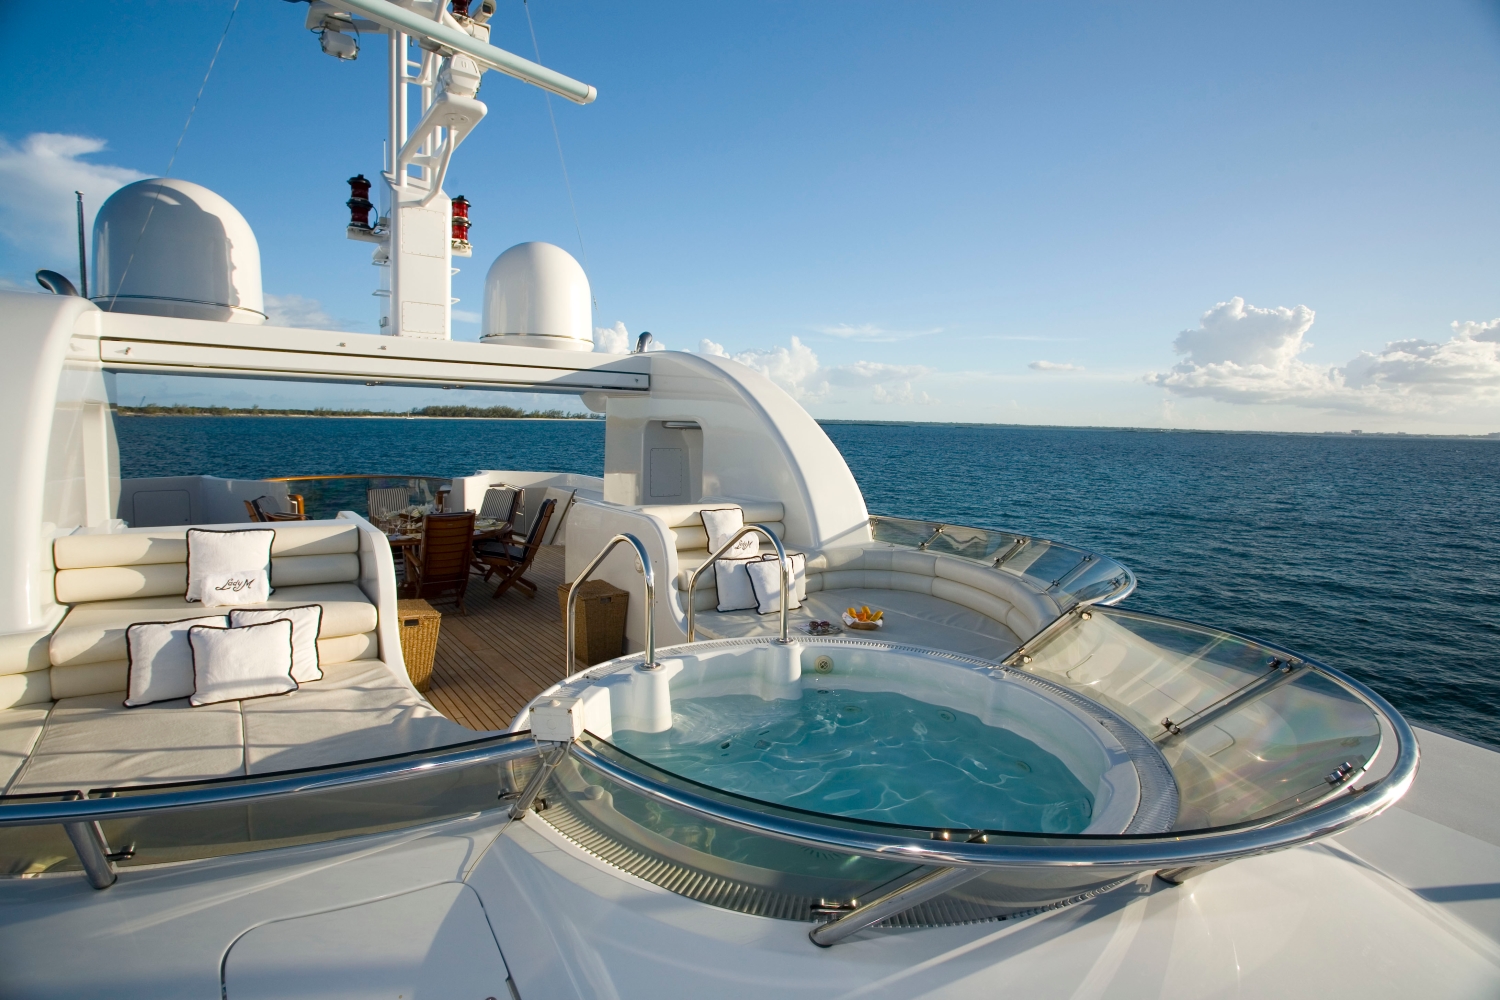 Luxury Motor Yacht LADY M II (ex Lady M) is an